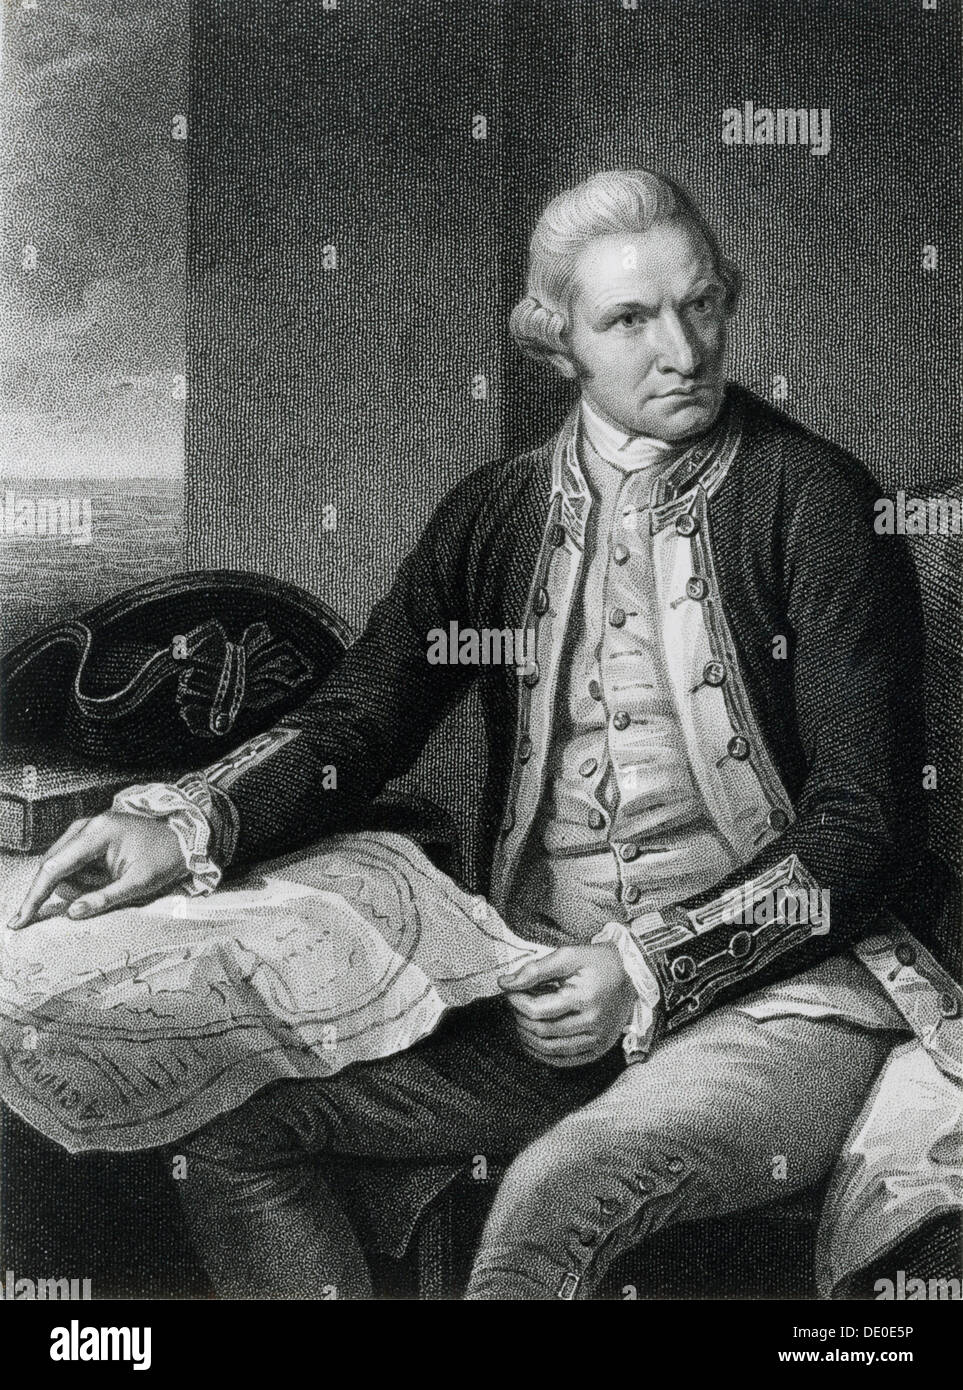 El Capitán James Cook, oficial naval inglés del siglo XVIII y explorador. Artista: Desconocido Foto de stock